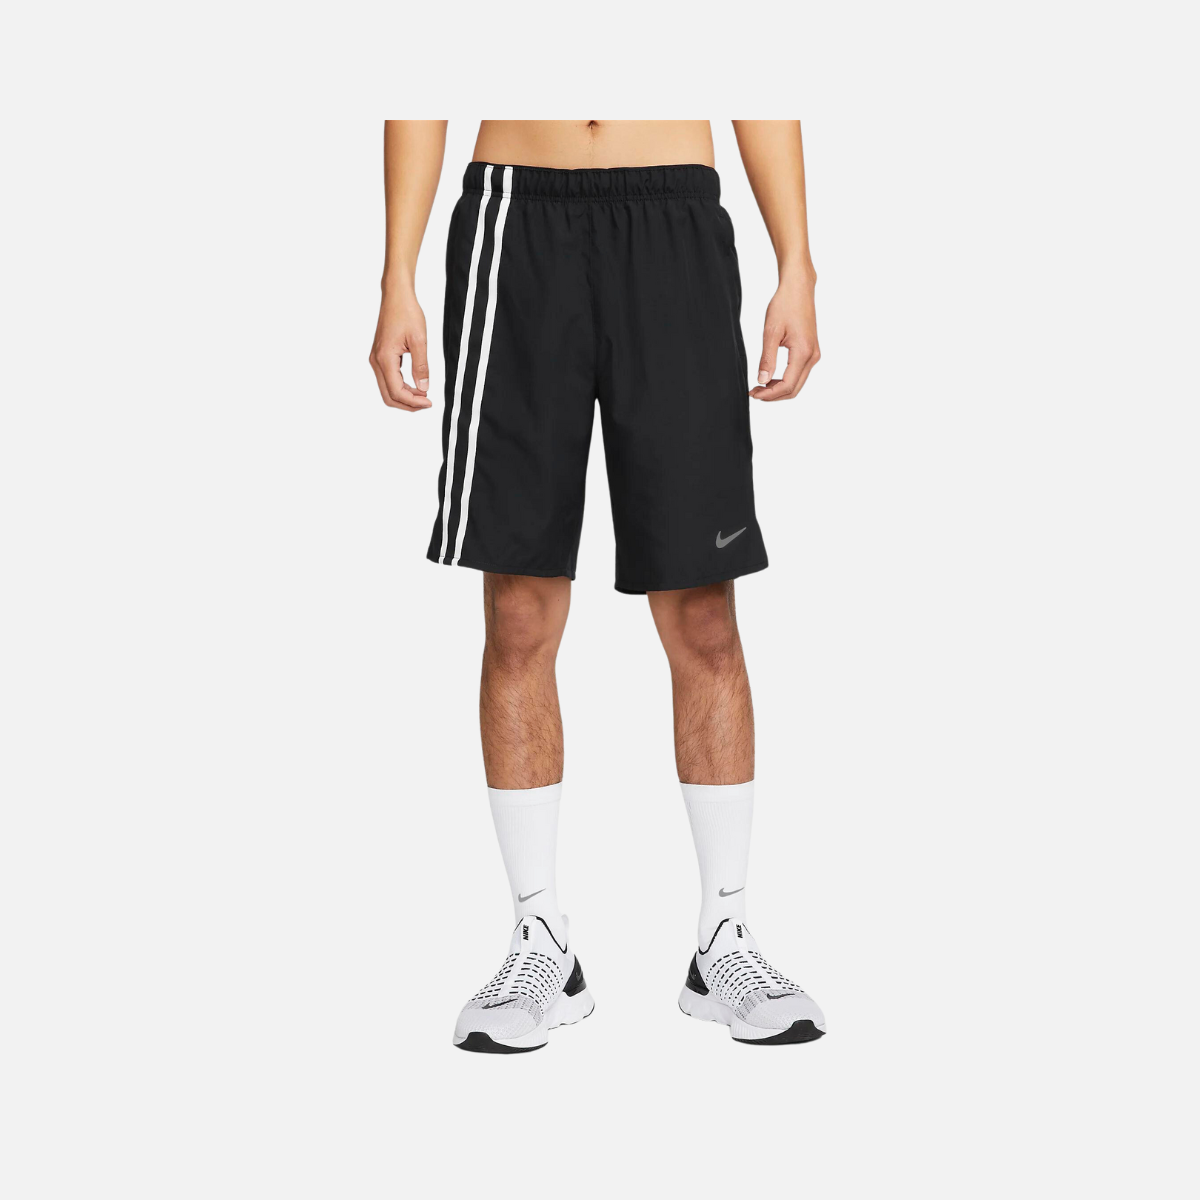 Nike Dri-FIT Challenger Men's Unlined Versatile Shorts -Black